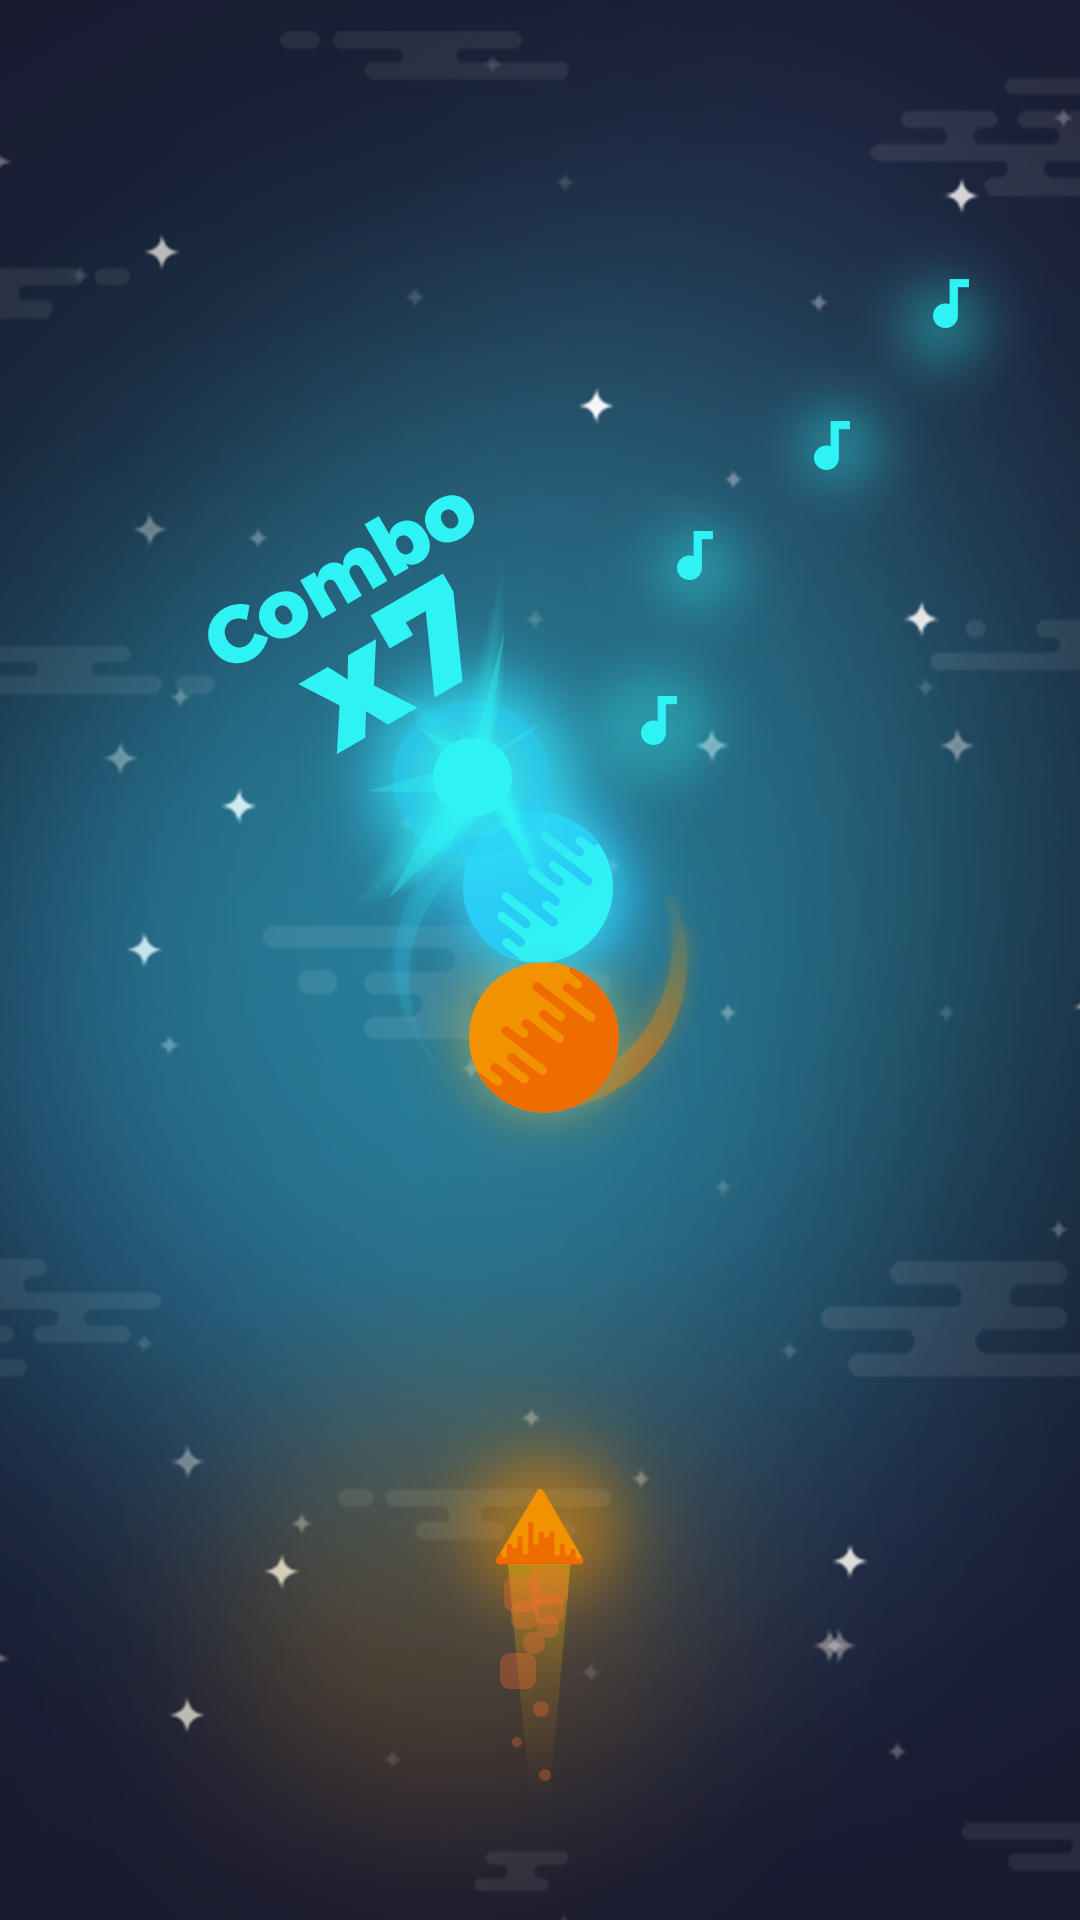 Screenshot 1 of Codots - Rhythmusspiel 1.0